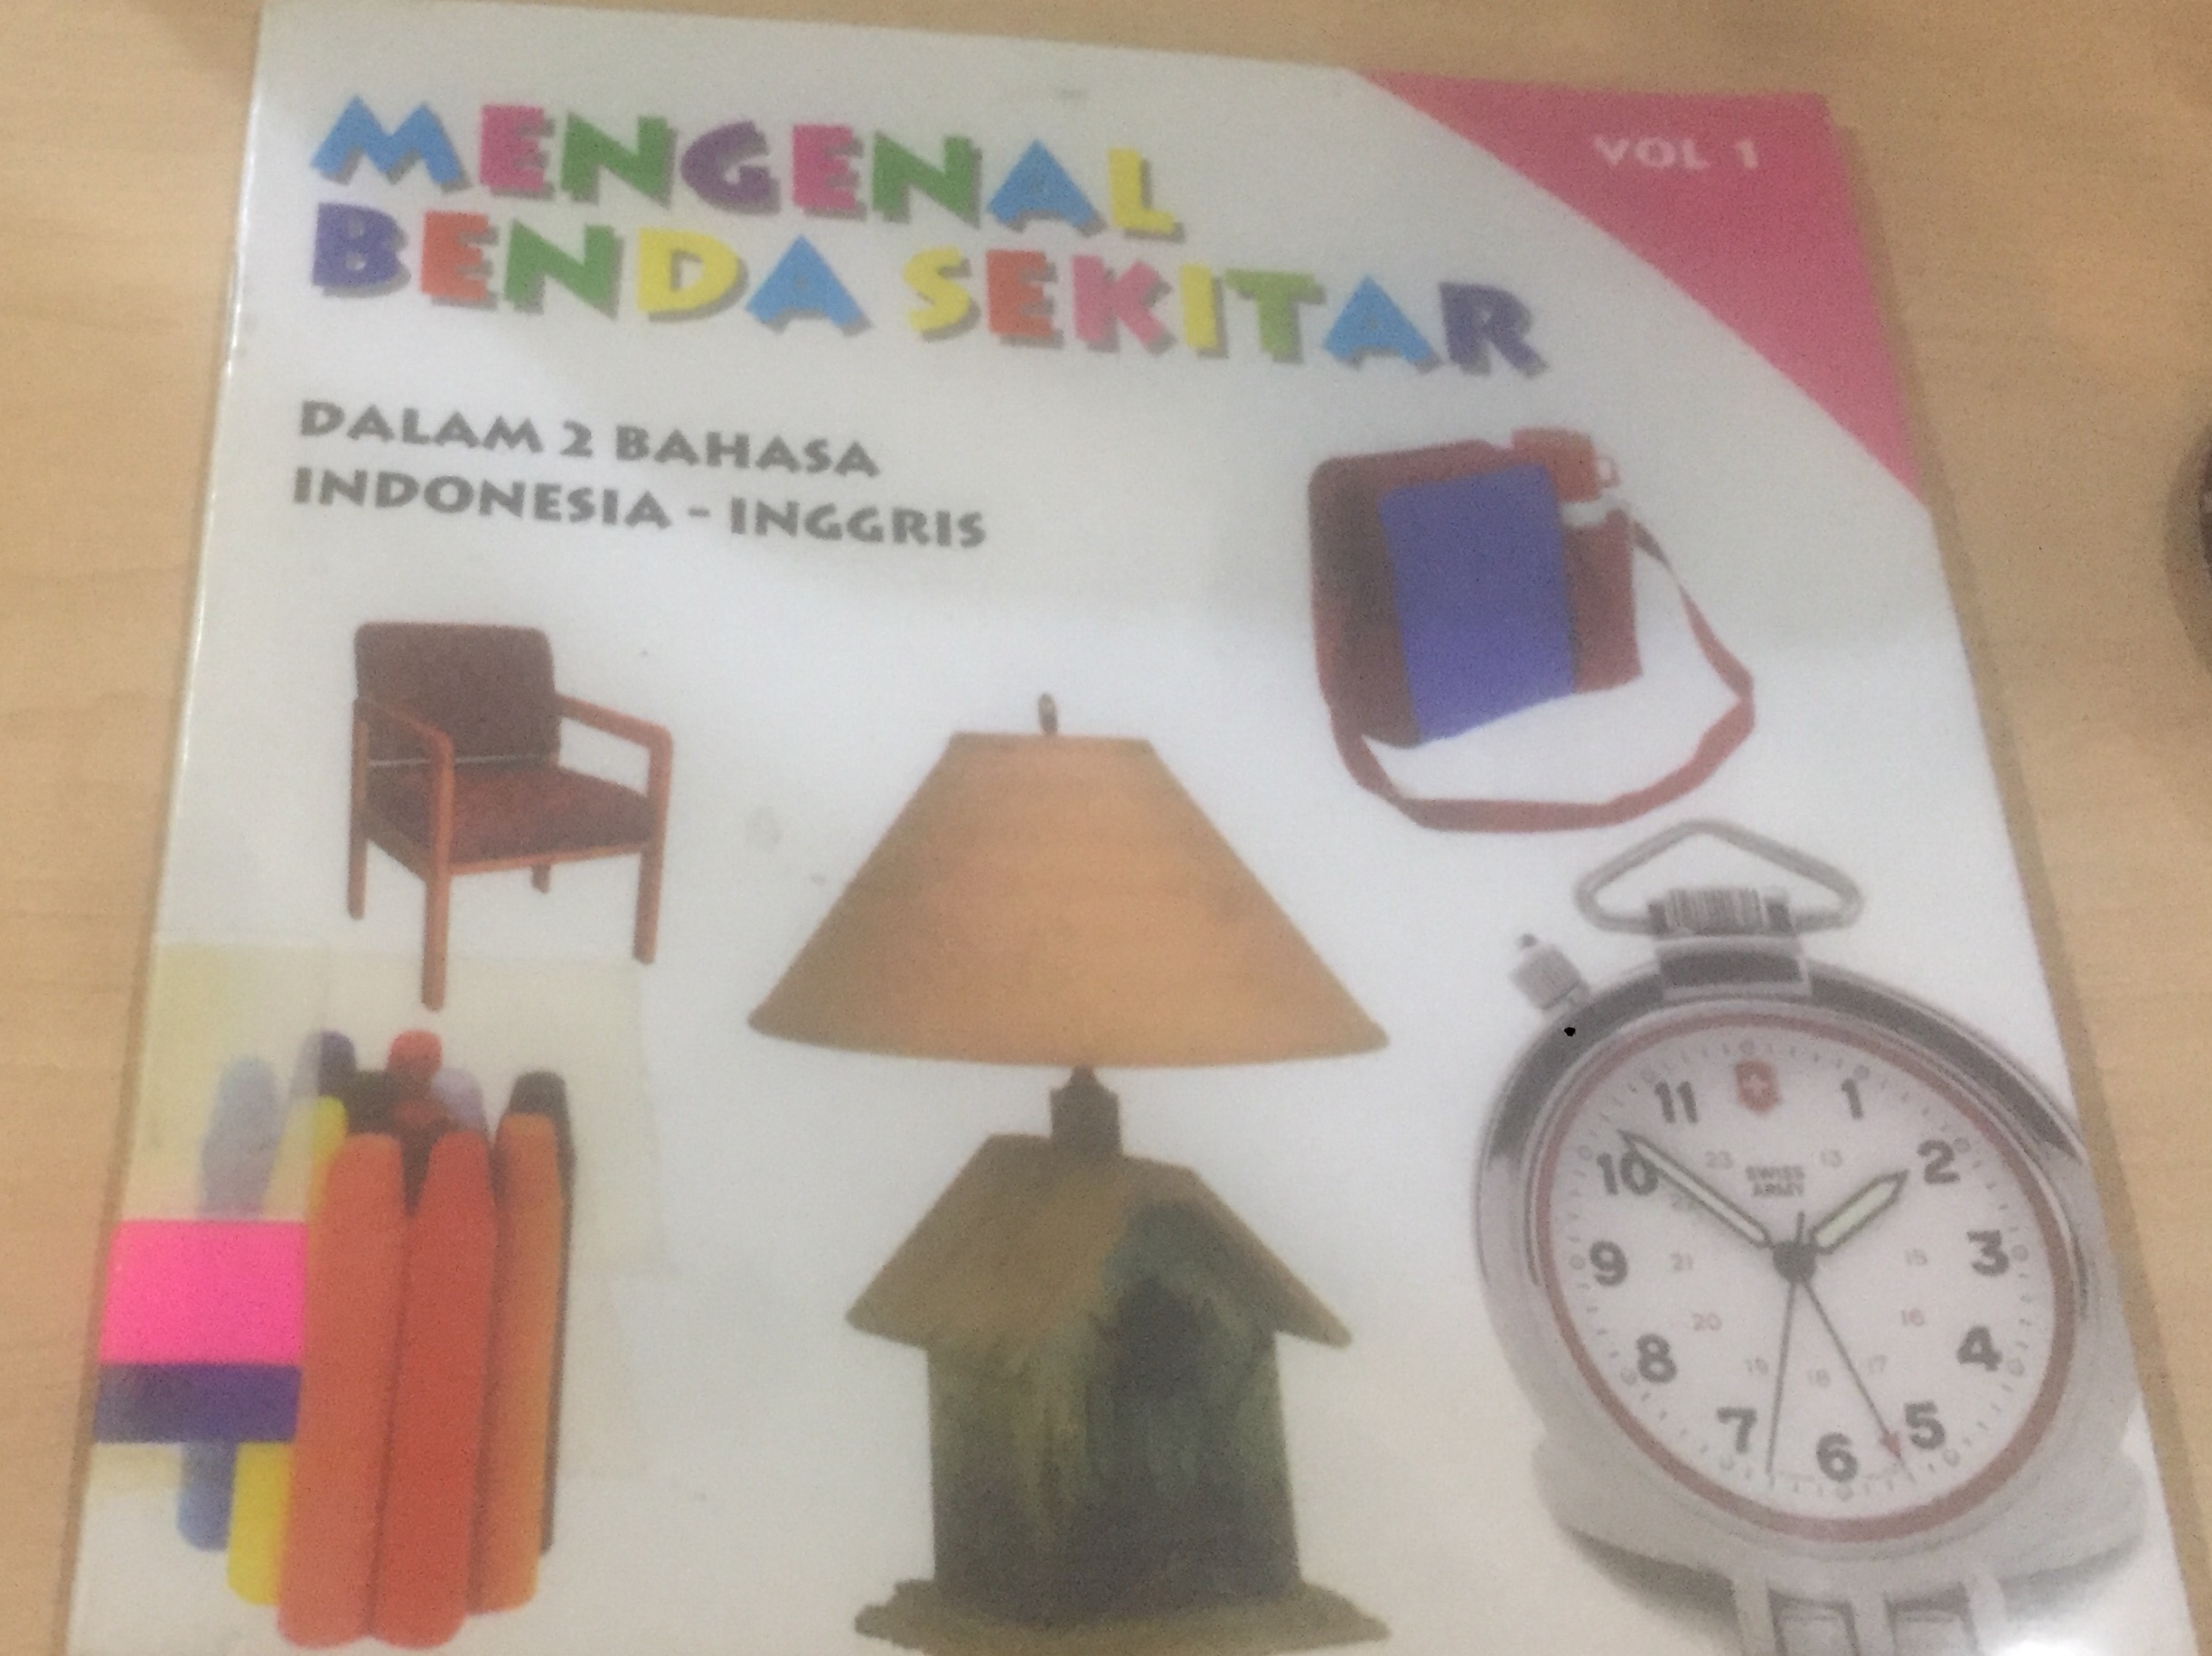 Mengenal benda sekitar Vol 1 :  dalam dua bahasa Indonesia-Inggris